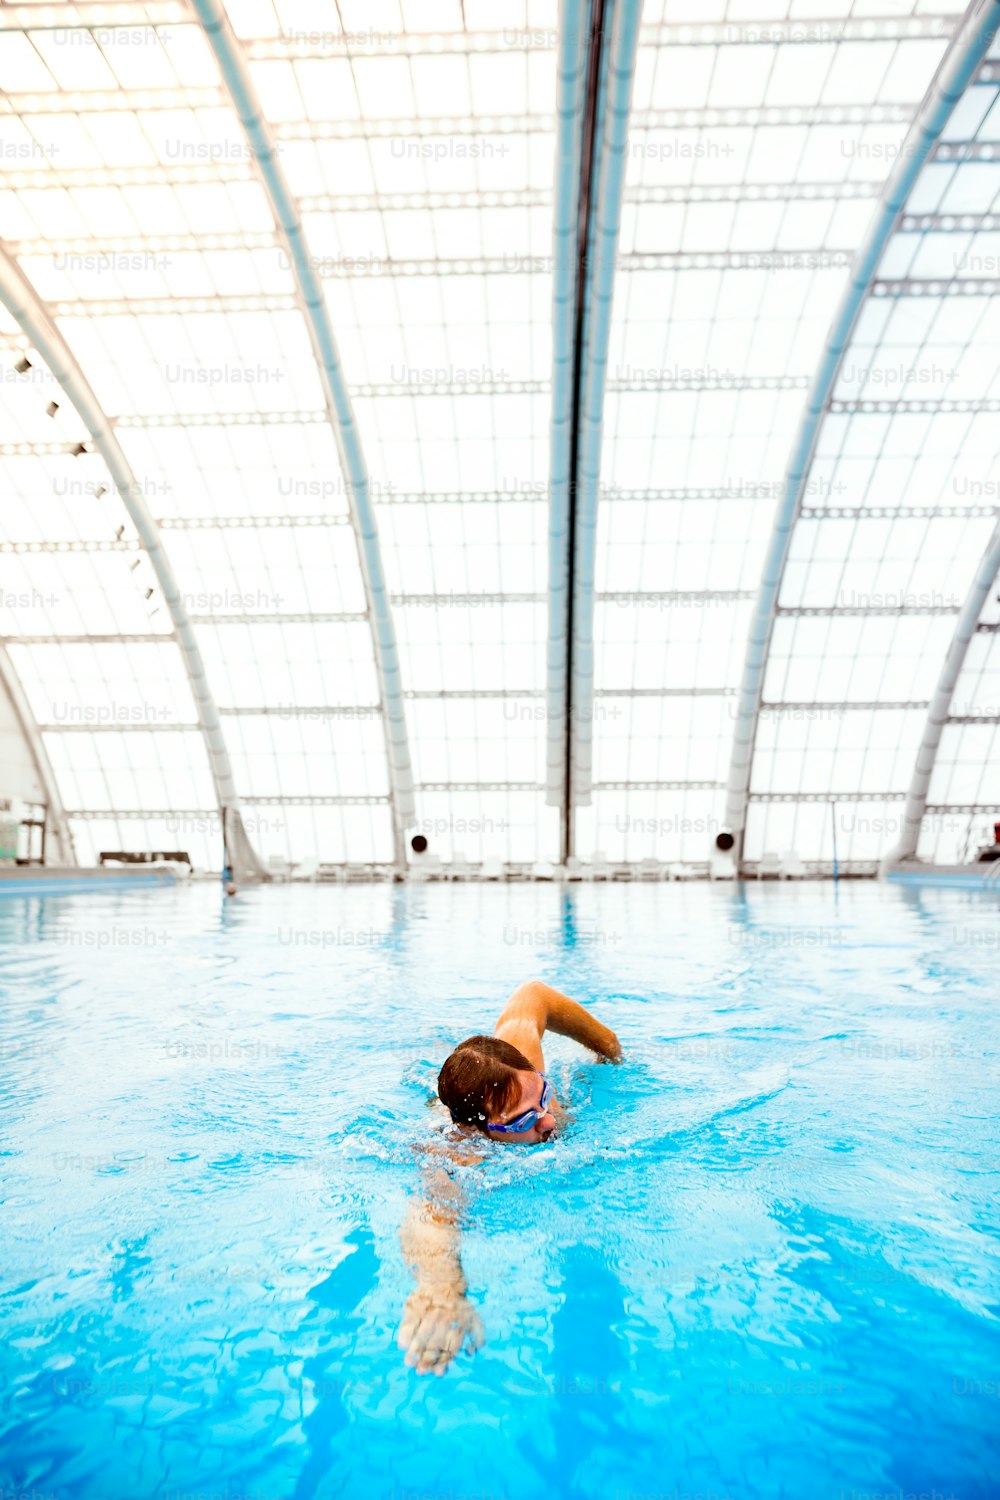 Uomo che nuota in una piscina coperta. Nuotatore professionista che si allena in piscina.